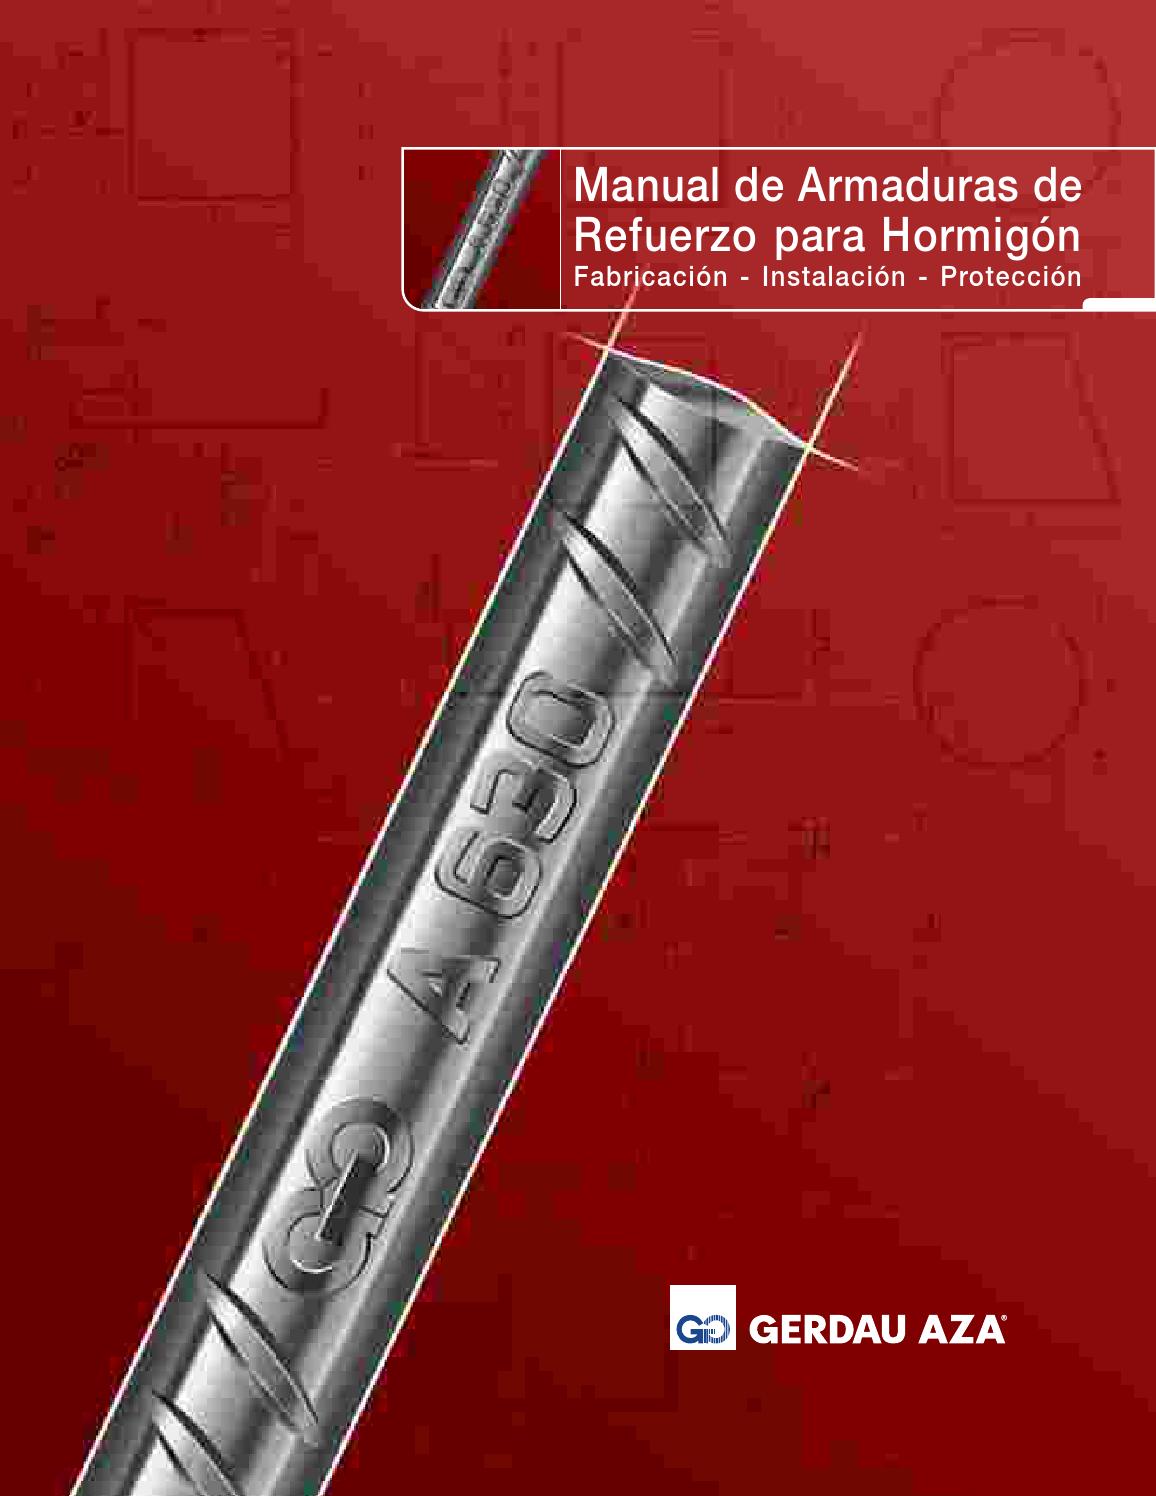 Manual de Armaduras de Refuerzo para Hormigón 1 Edición Carlos Rondon PDF